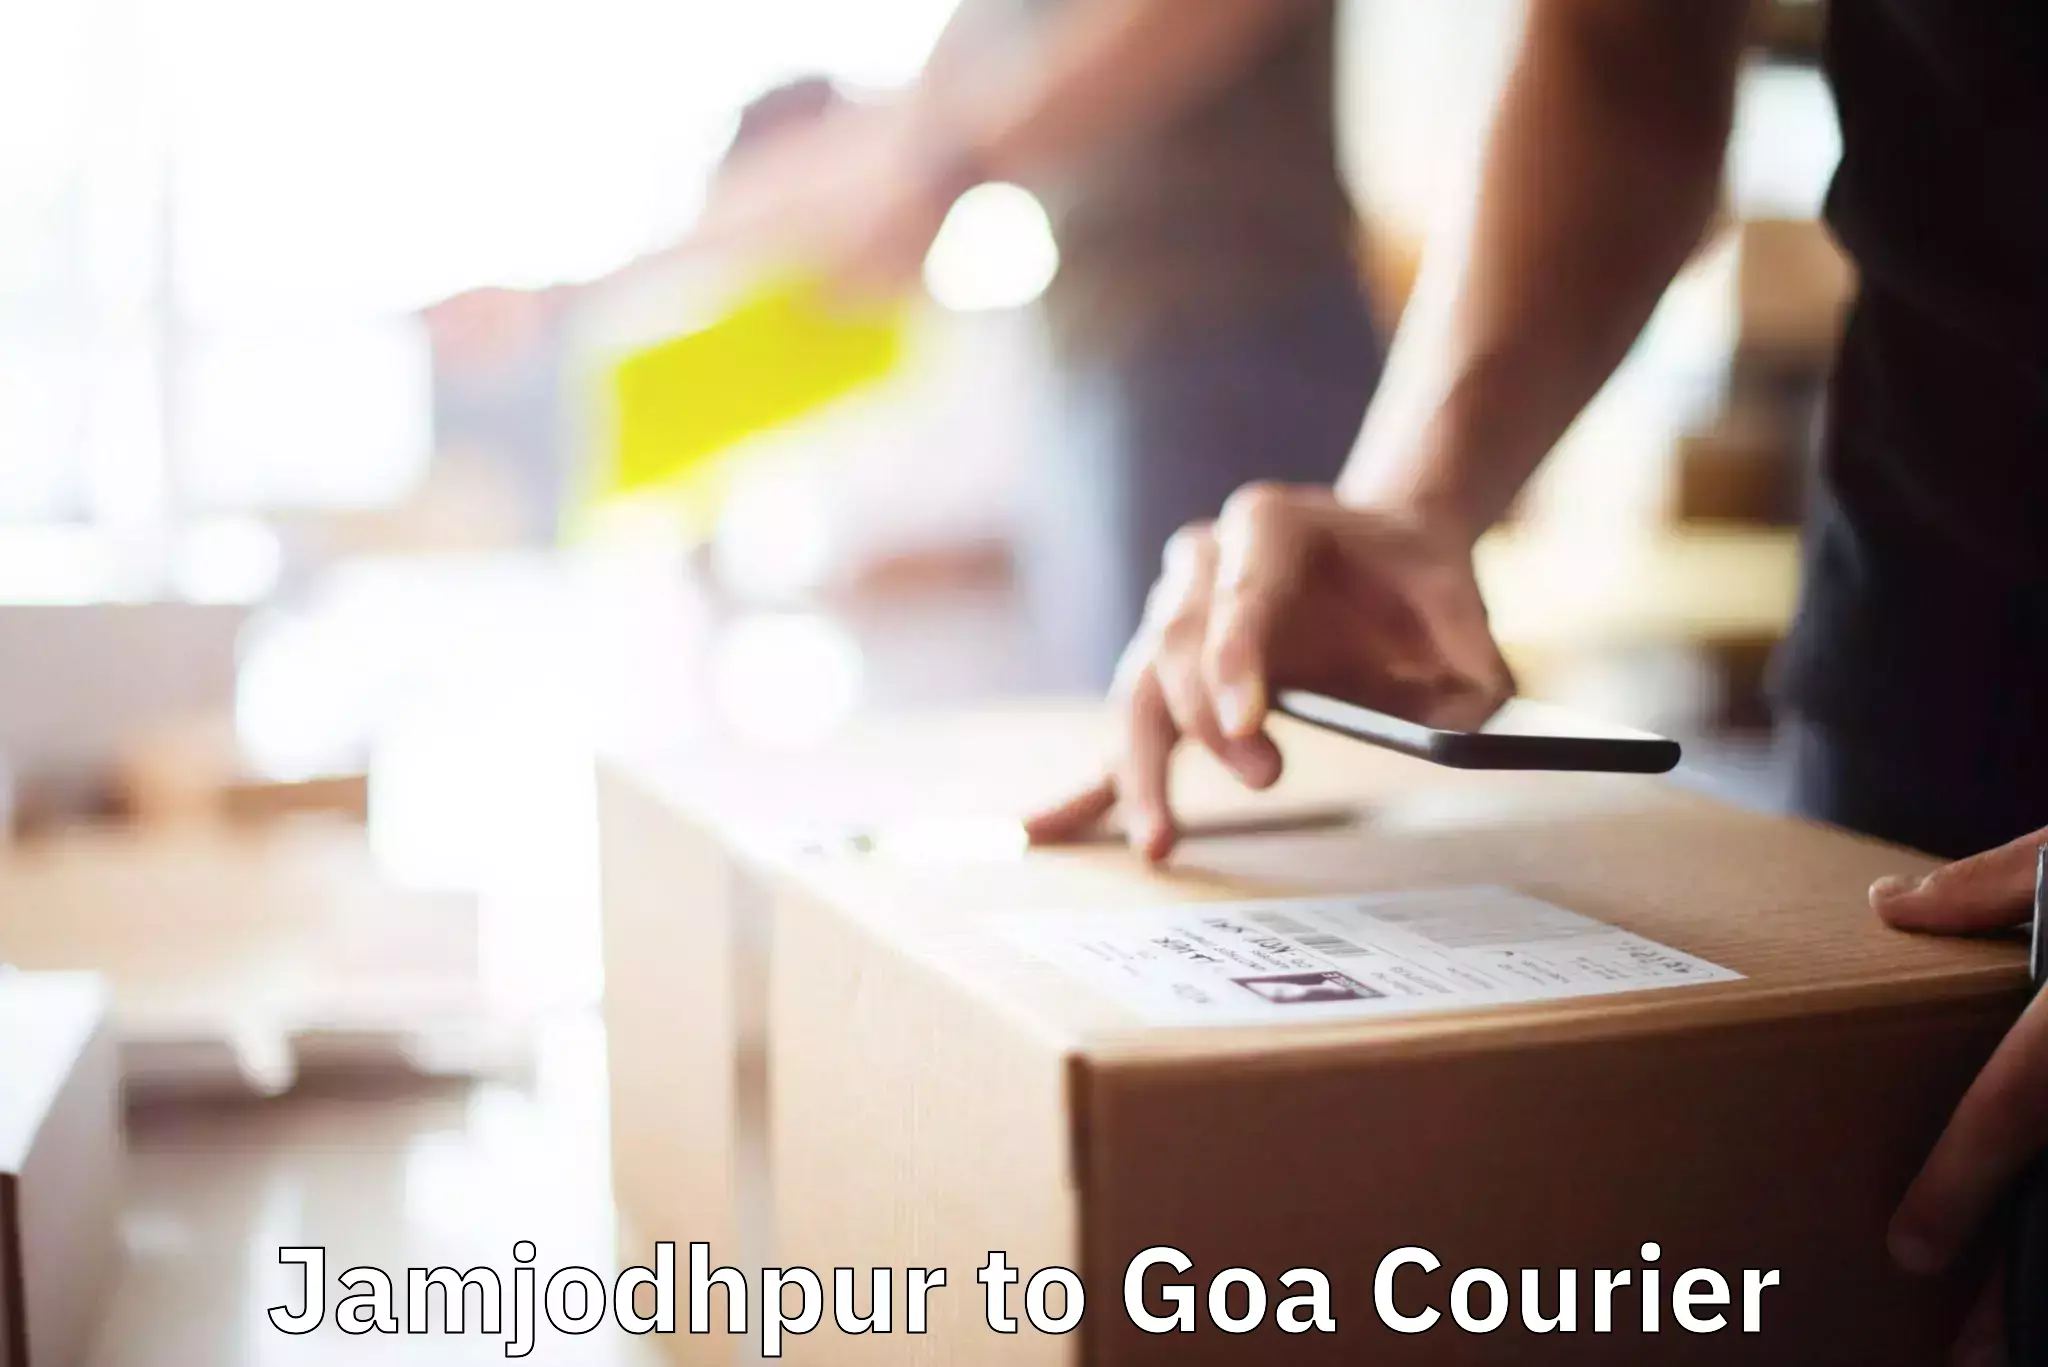 Efficient moving company Jamjodhpur to Goa